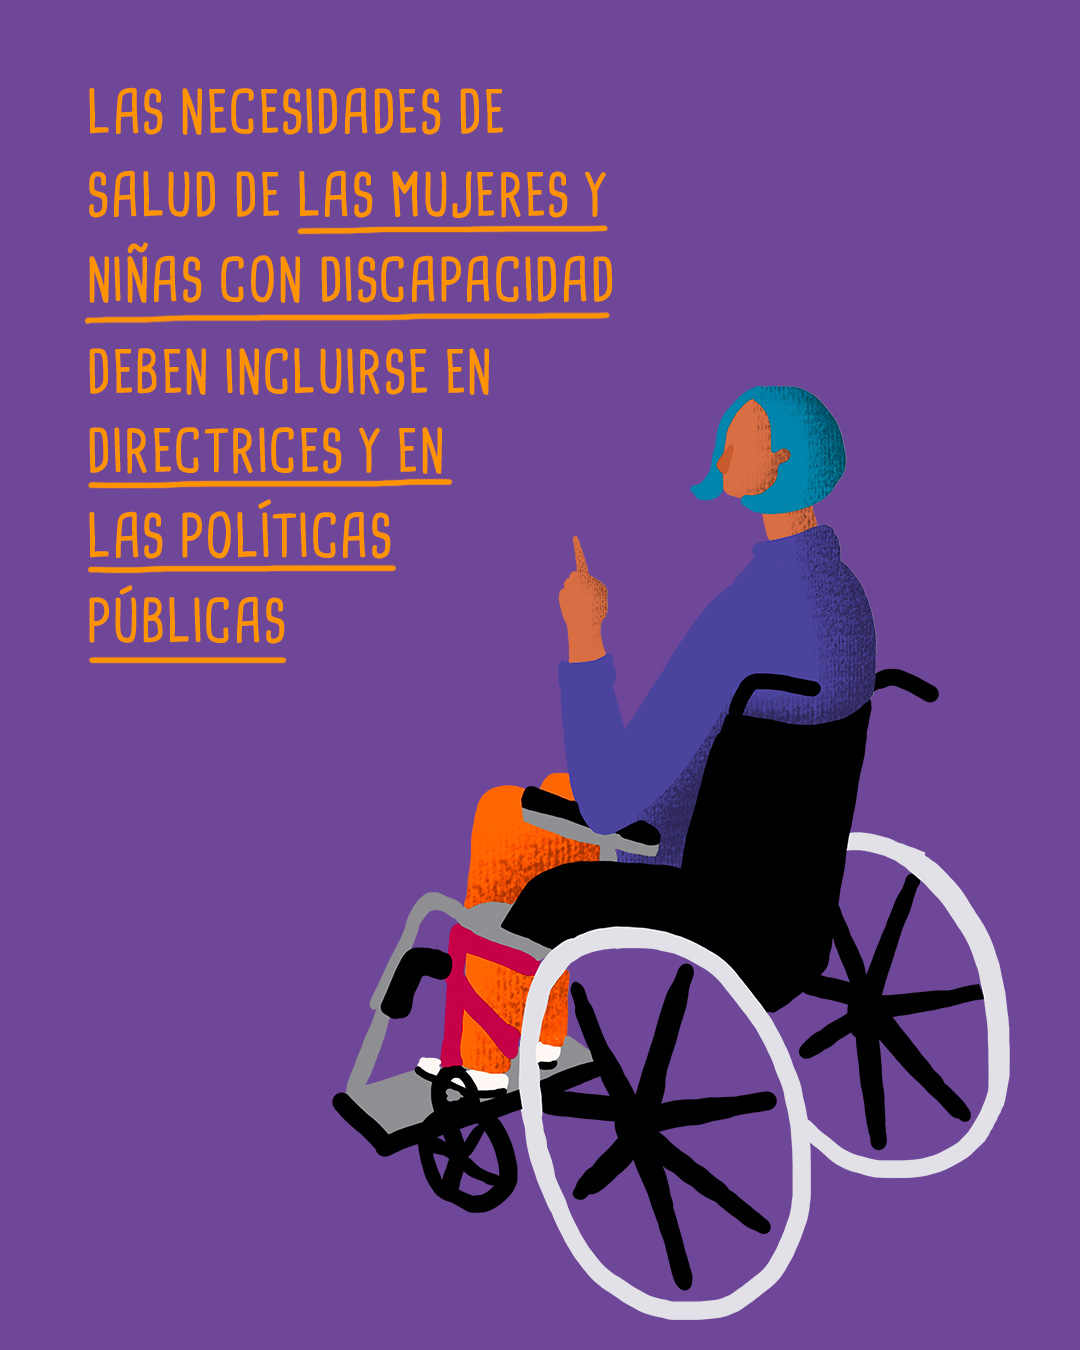 Ilustración de una persona con discapacidad motora. Un texto que dice, las necesidades de salud de las mujeres y niñas con discapacidad deben incluirse en directrices y en las políticas públicas.